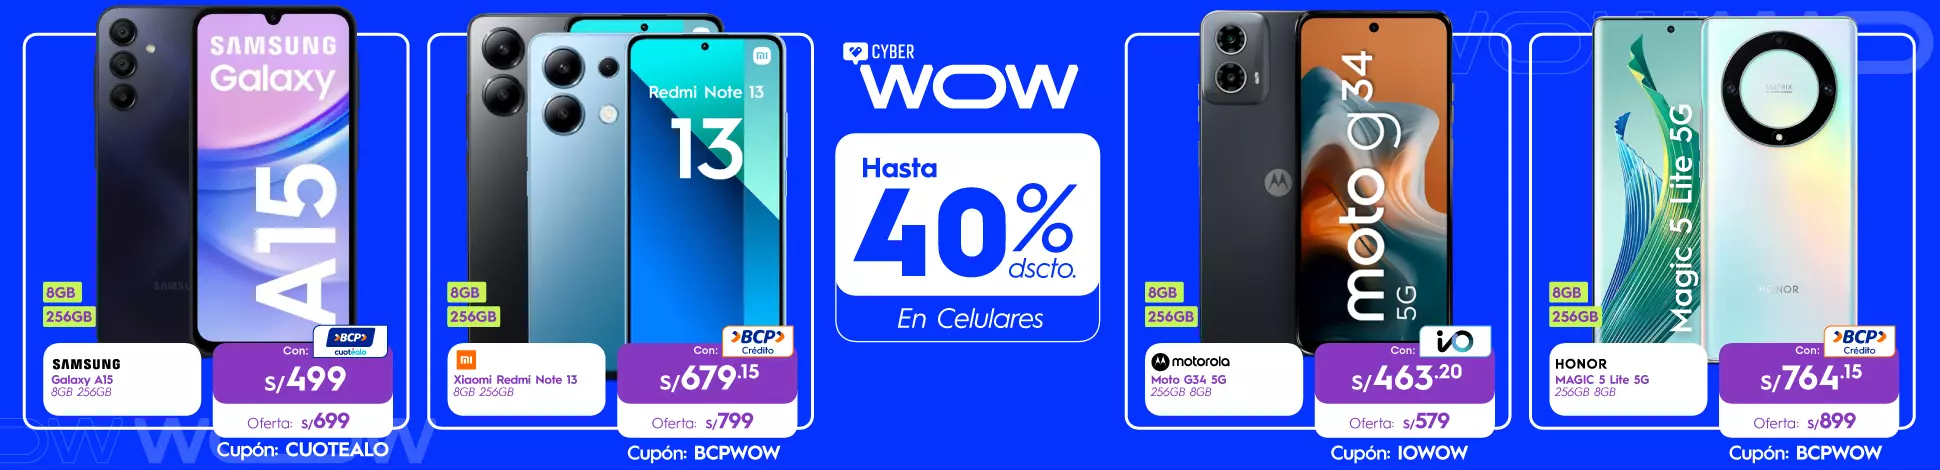 hs-CW-abril24-celulares.webp | Juntoz.com